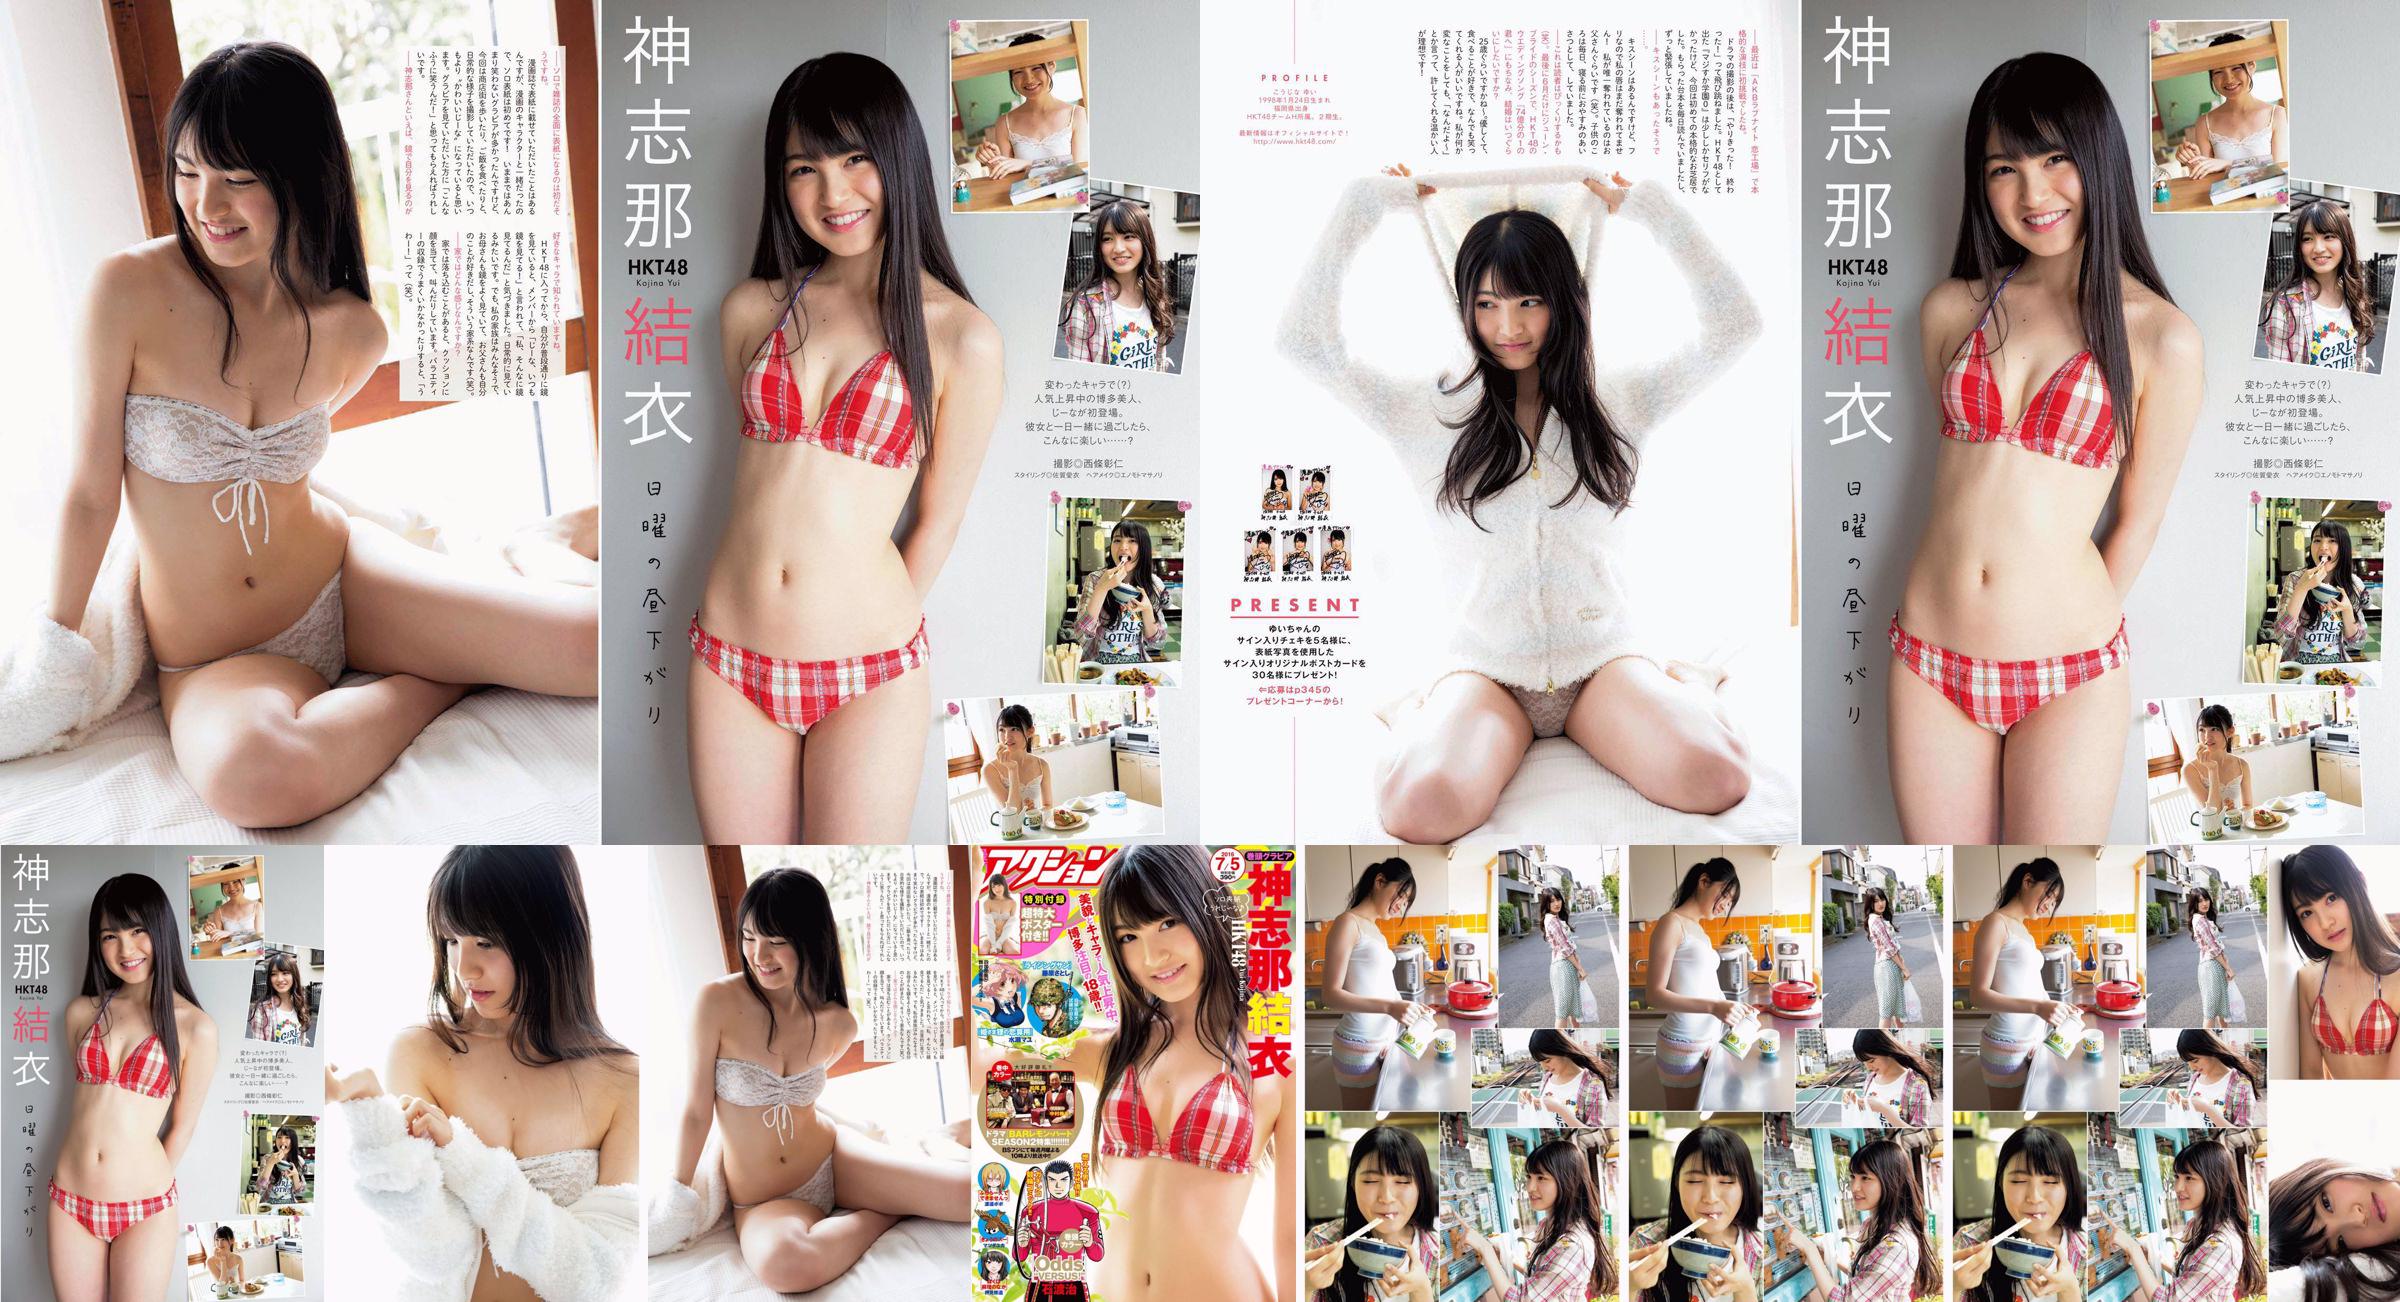 [Manga Action] Shinshina Yui 2016 No.13 Photo Magazine No.d60da6 หน้า 2